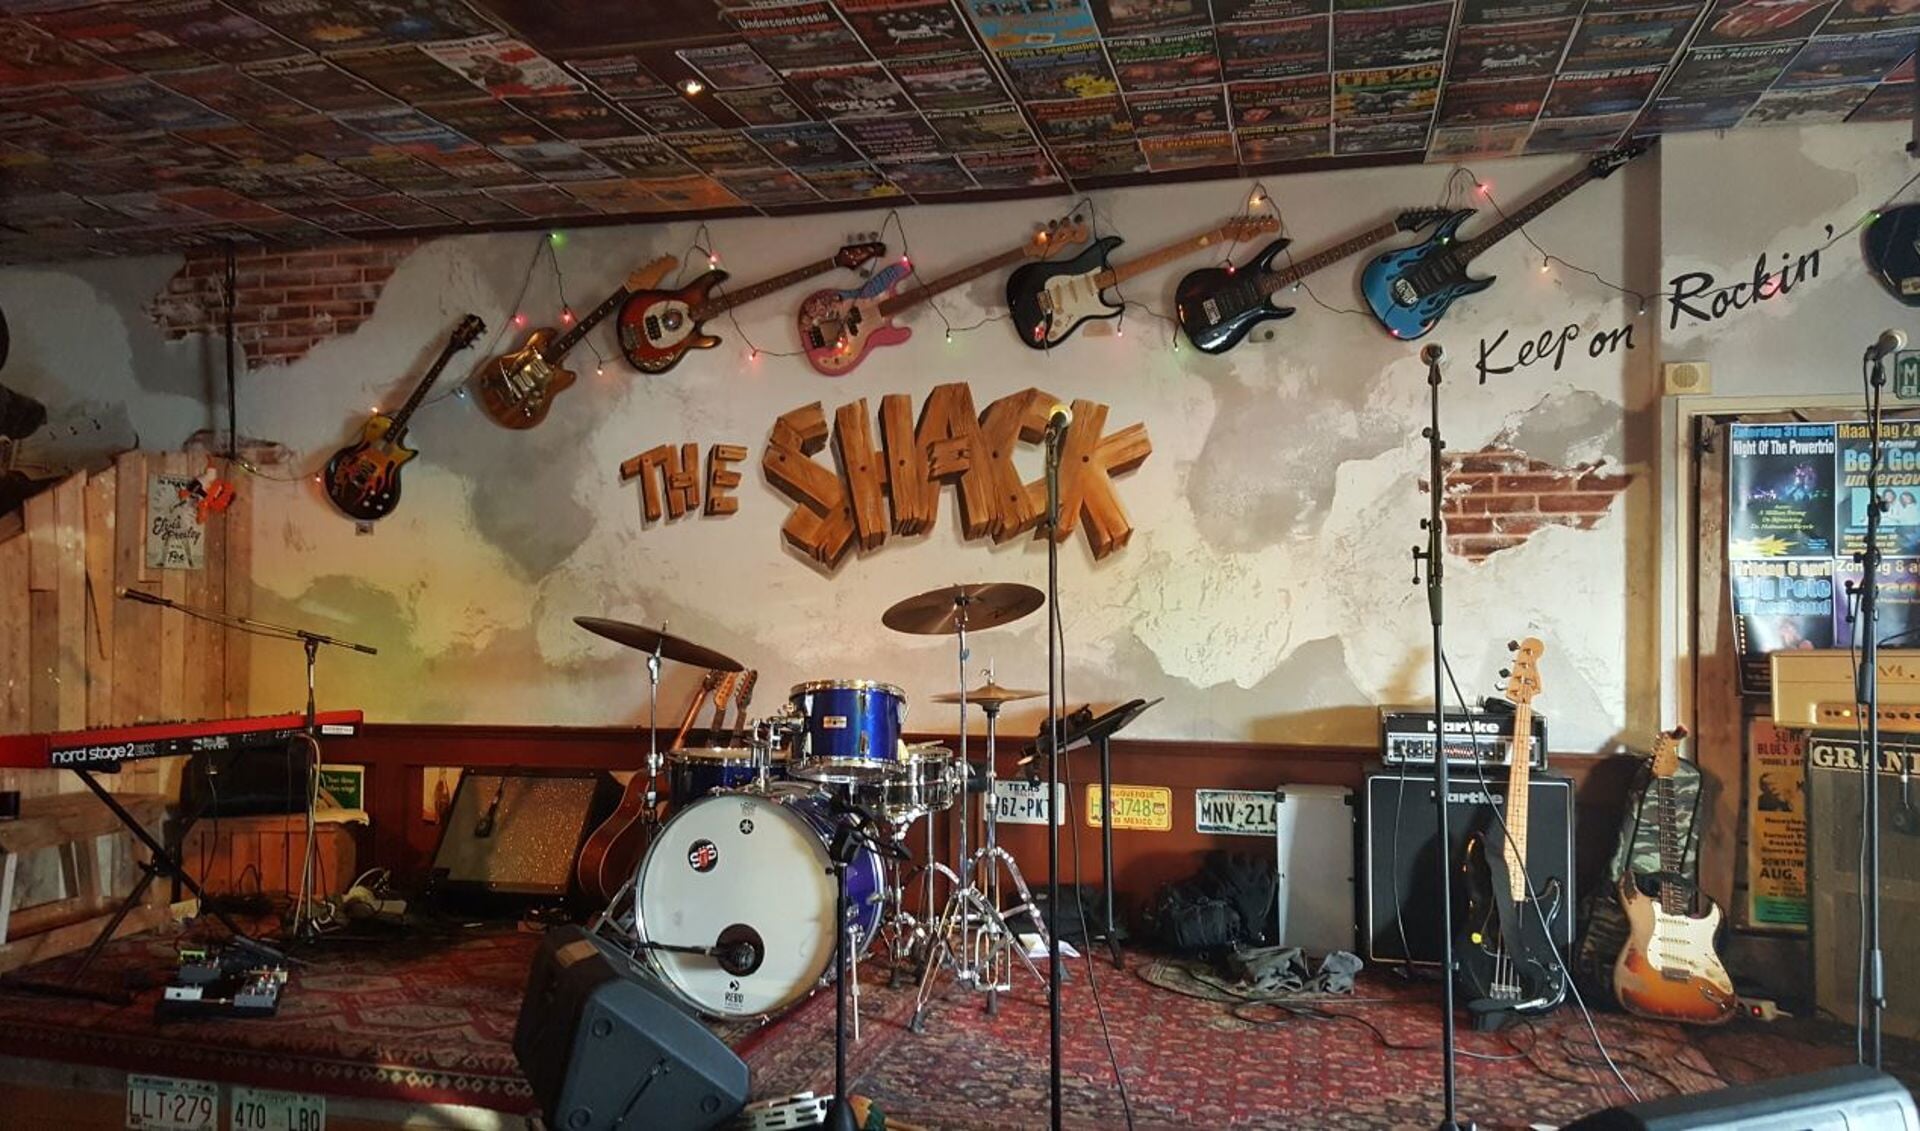 Het podium van The Shack staat de komende weken vol met muzikanten.